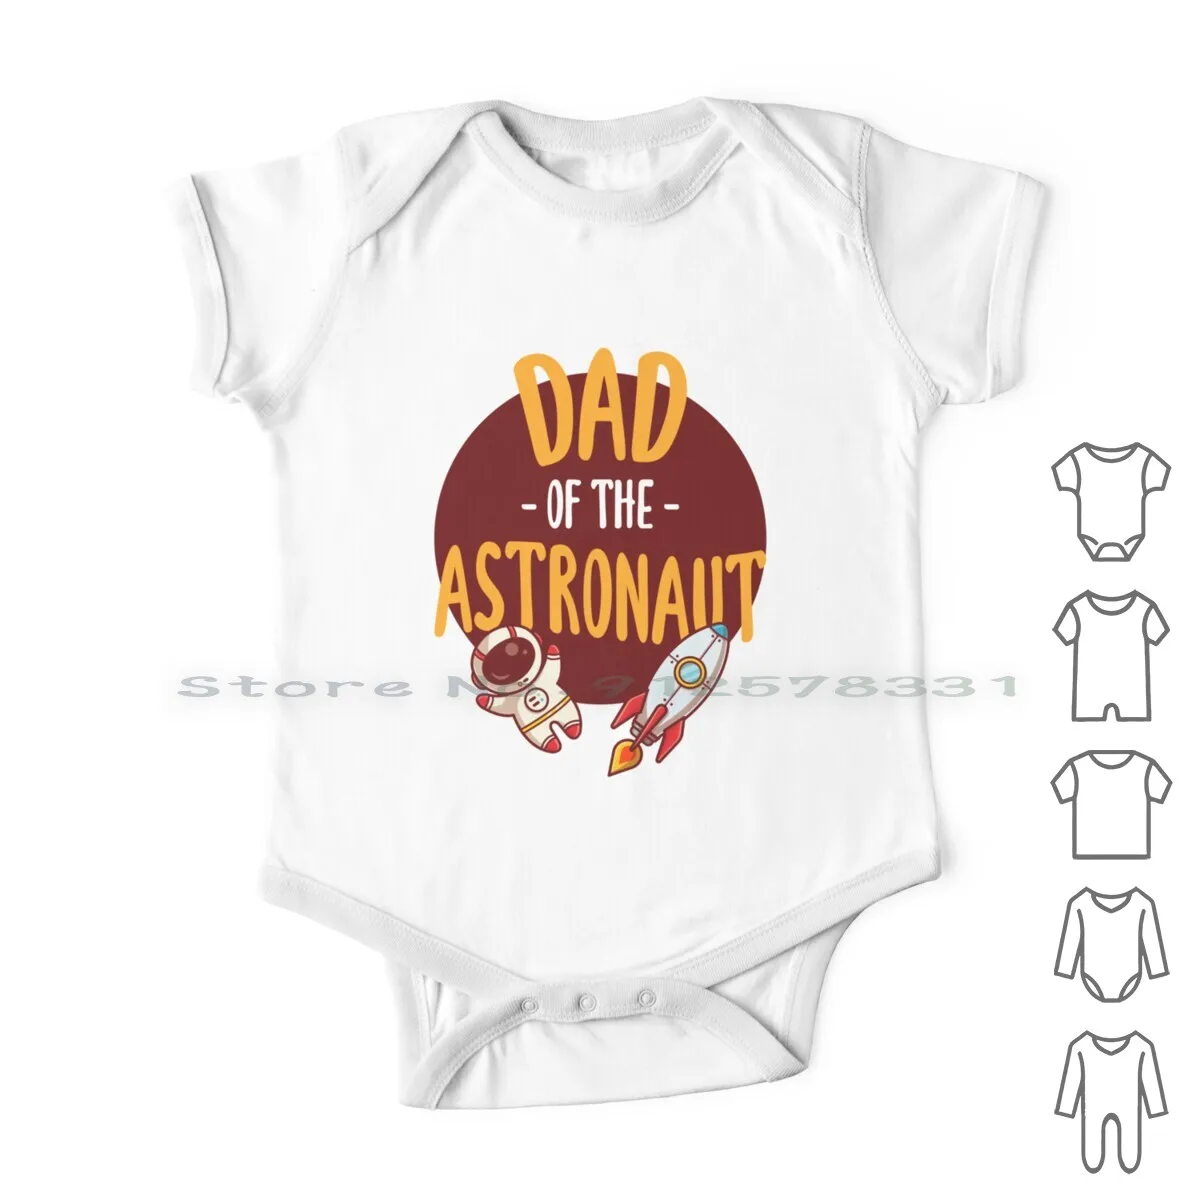 

Папа астронавта, День отца 2021, идеи для подарка, Одежда для новорожденных, комбинезоны, хлопковые комбинезоны, космос, наука, Вселенная, луна